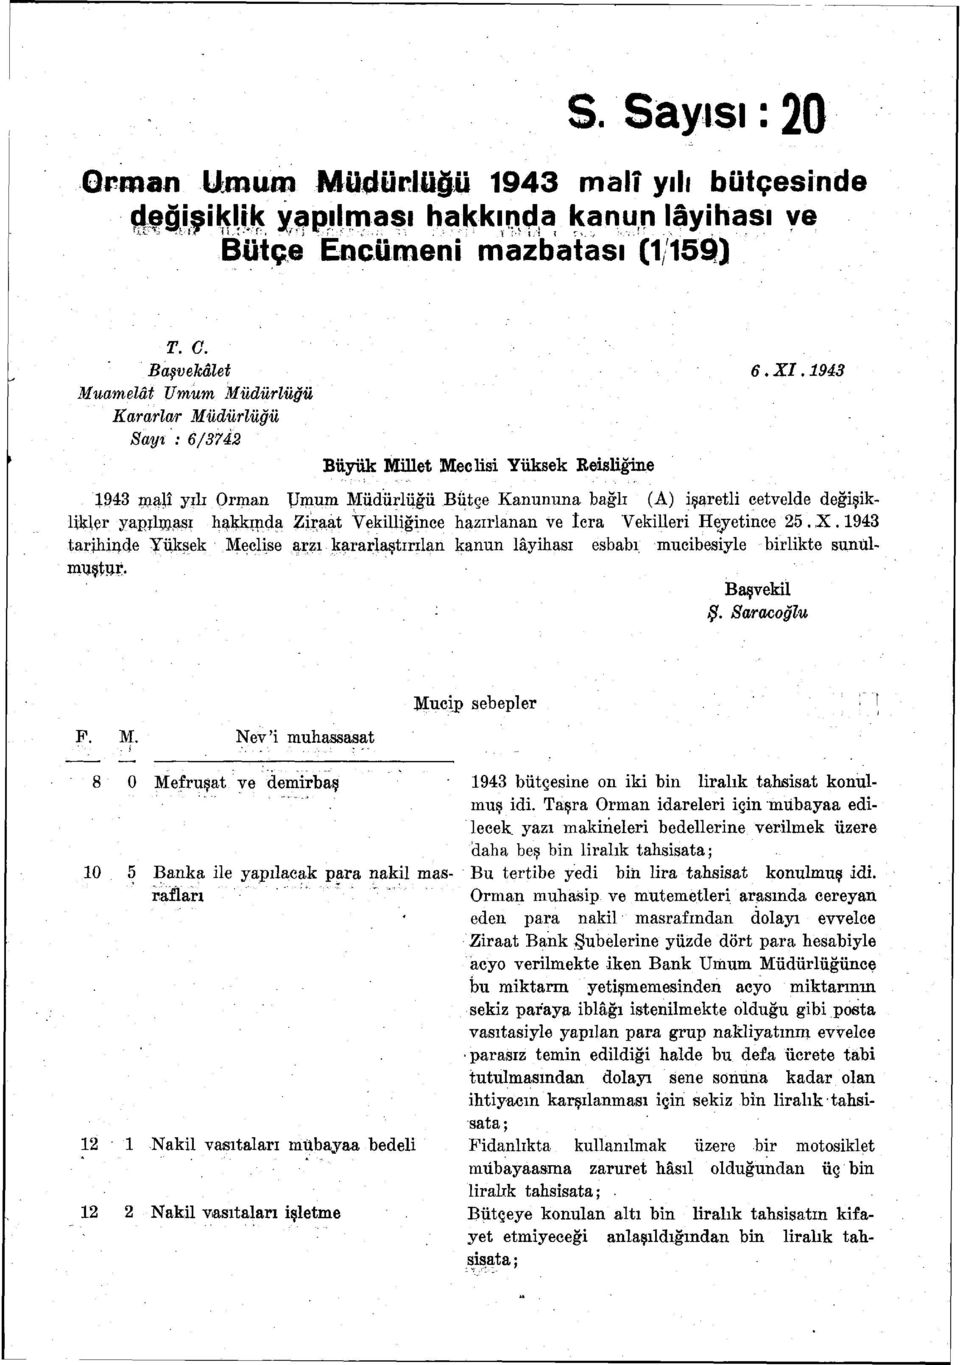 1943 1943 malî yılı Orman Umum Müdürlüğü Bütçe Kanununa bağlı (A) işaretli cetvelde değişiklikler yapılması hakkında Ziraat Vekilliğince hazırlanan ve icra Vekilleri Heyetince 25. X.